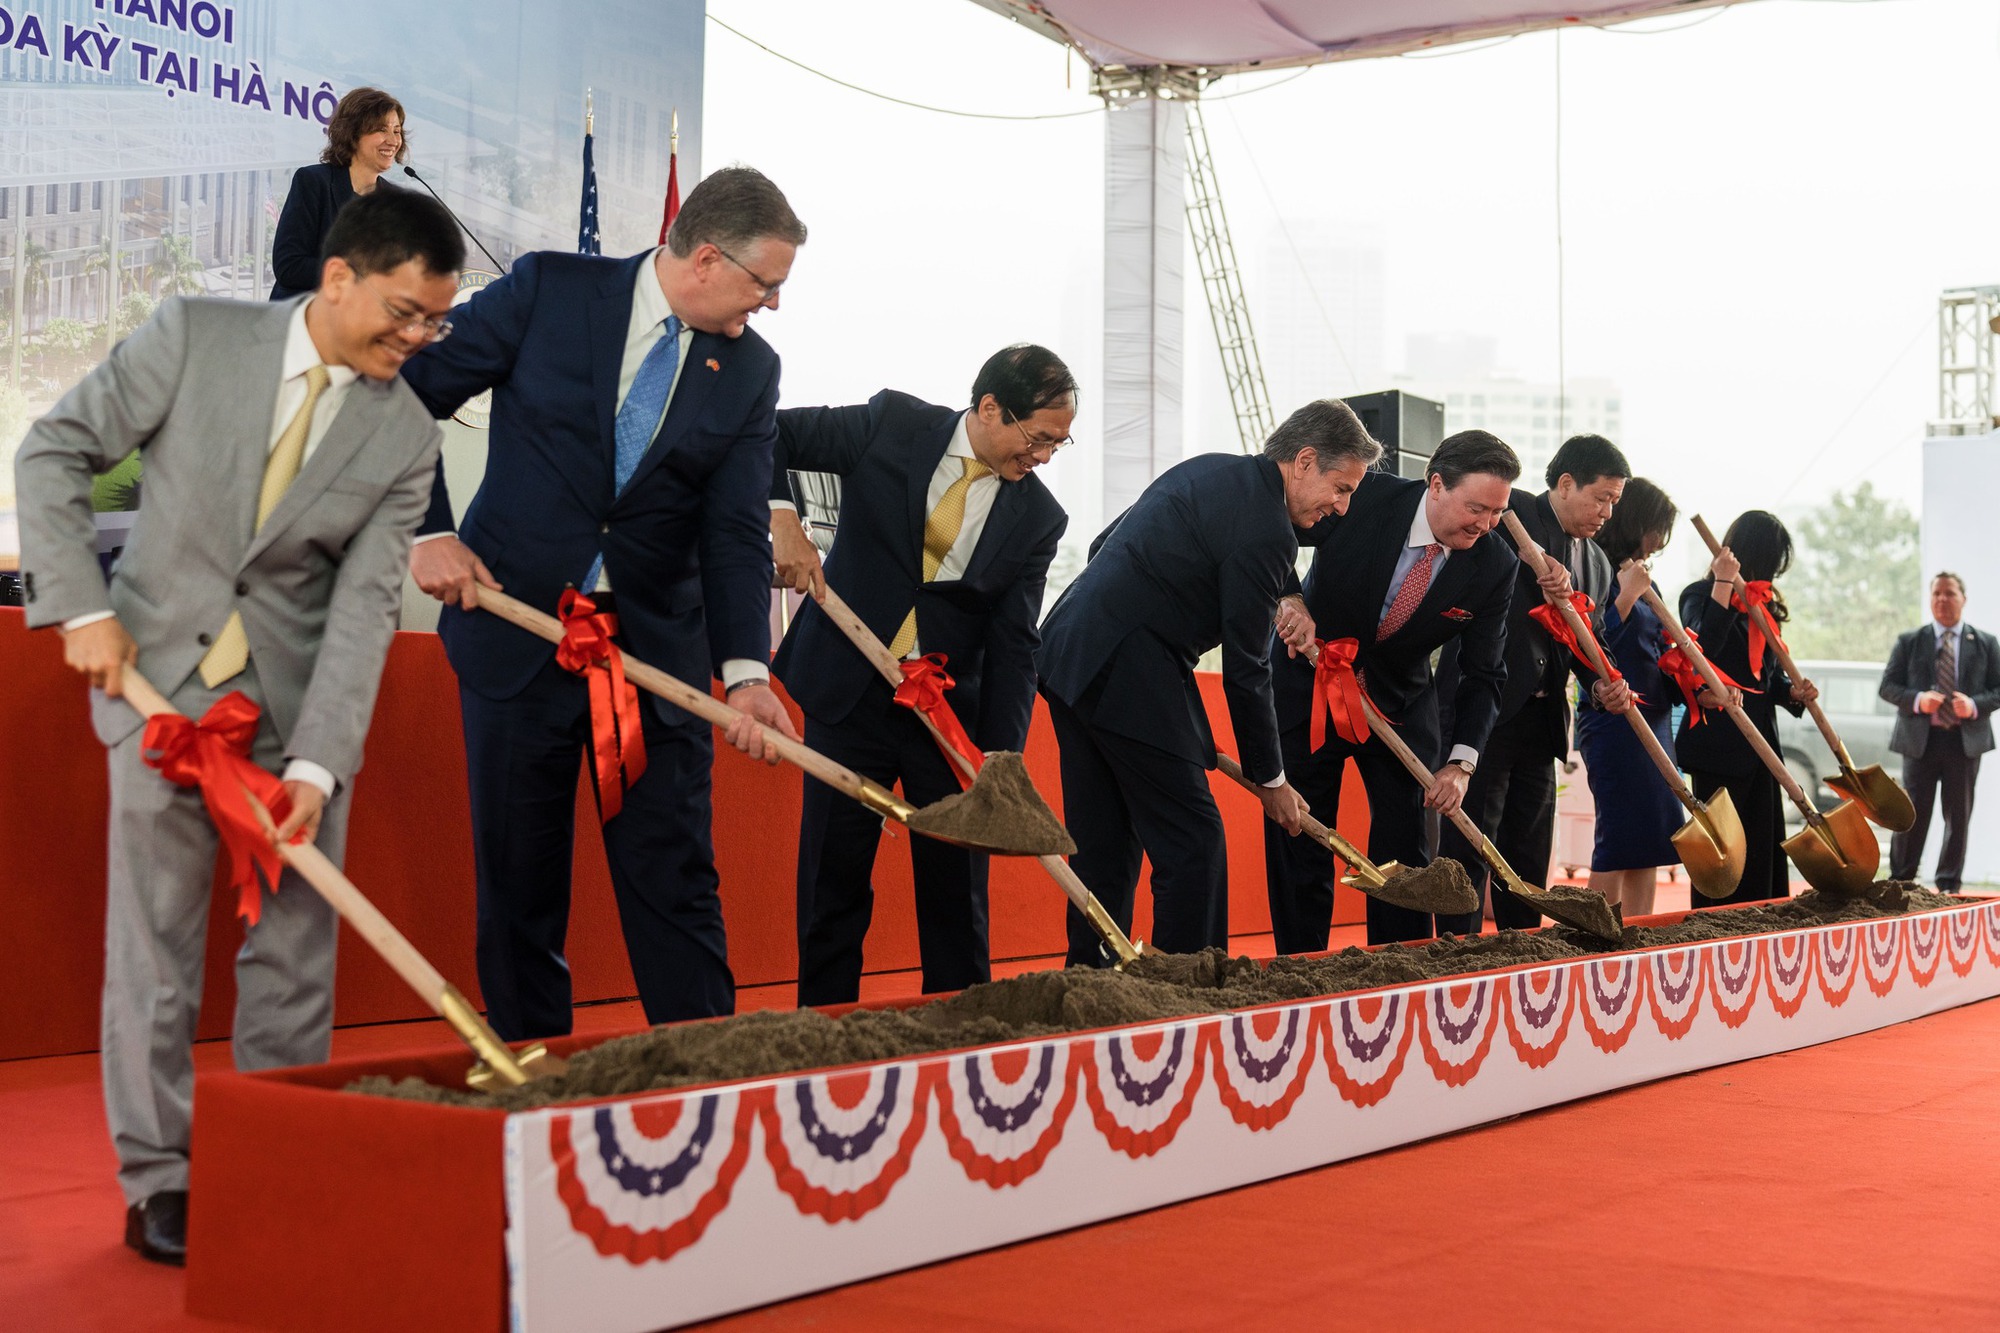 Ngoại trưởng Antony Blinken dự lễ khởi công trụ sở mới Đại sứ quán Hoa Kỳ tại Hà Nội - Ảnh 4.